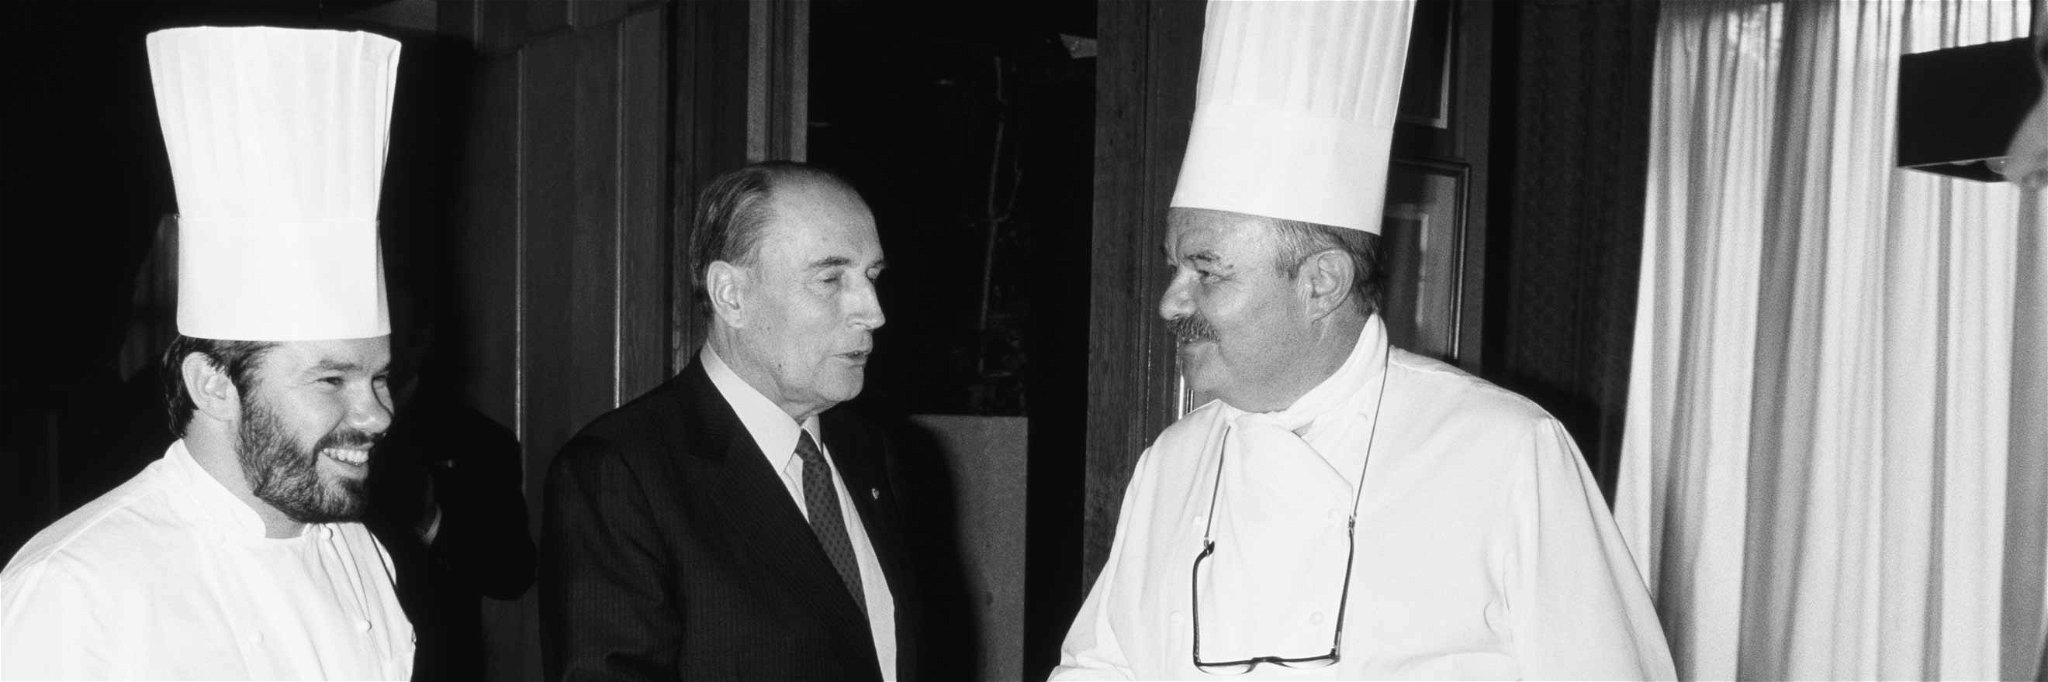 Pierre Troisgros (rechts) mit seinem Sohn Michel und dem ehemaligen Staatschef&nbsp;François Mitterrand.